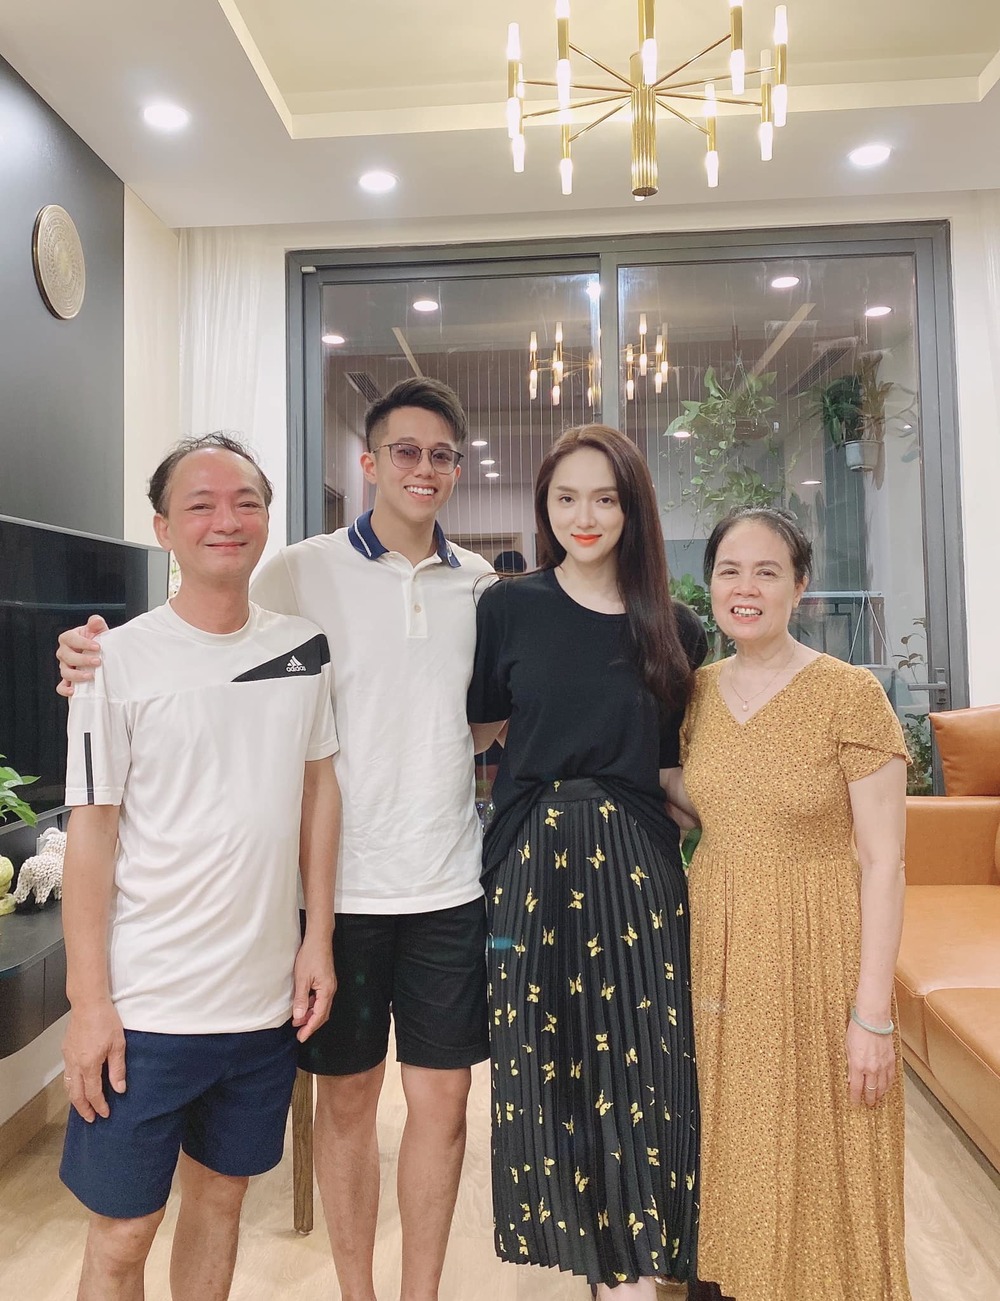  
Hương Giang ra mắt bạn trai Matt Liu với gia đình, cô chọn mẫu đầm dài kín đáo trong khi CEO người Singapore mặc áo polo (Ảnh: FBNV)